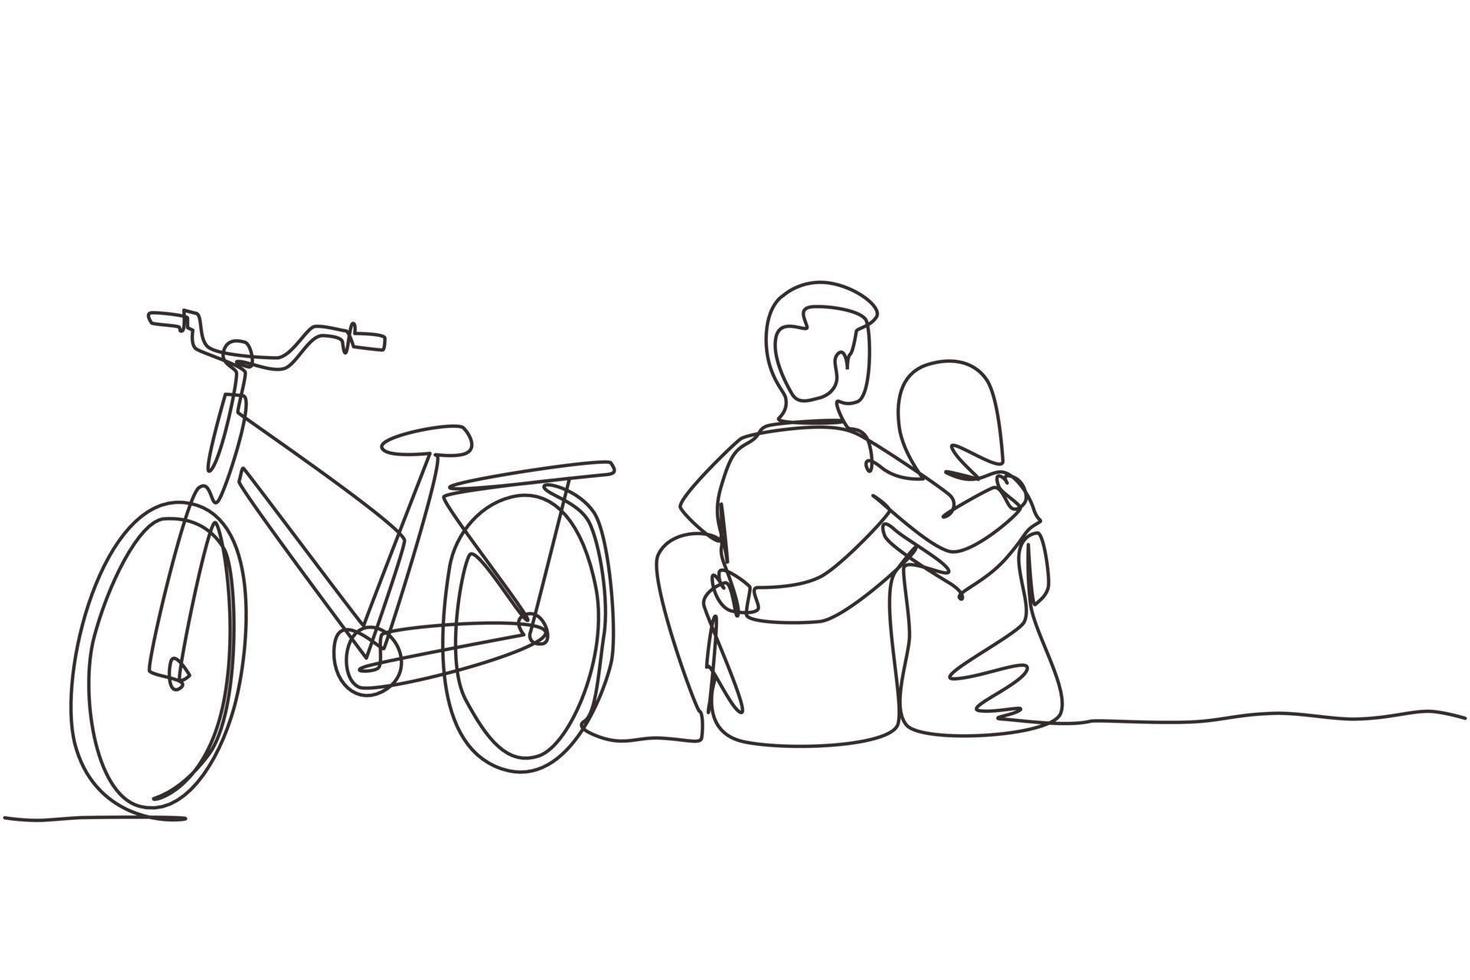 enkele een lijntekening achteraanzicht van romantische tiener paar buiten zitten met fiets naast hen. Arabische man en vrouw verliefd. gelukkig getrouwd stel. ononderbroken lijntekening ontwerp grafische vector